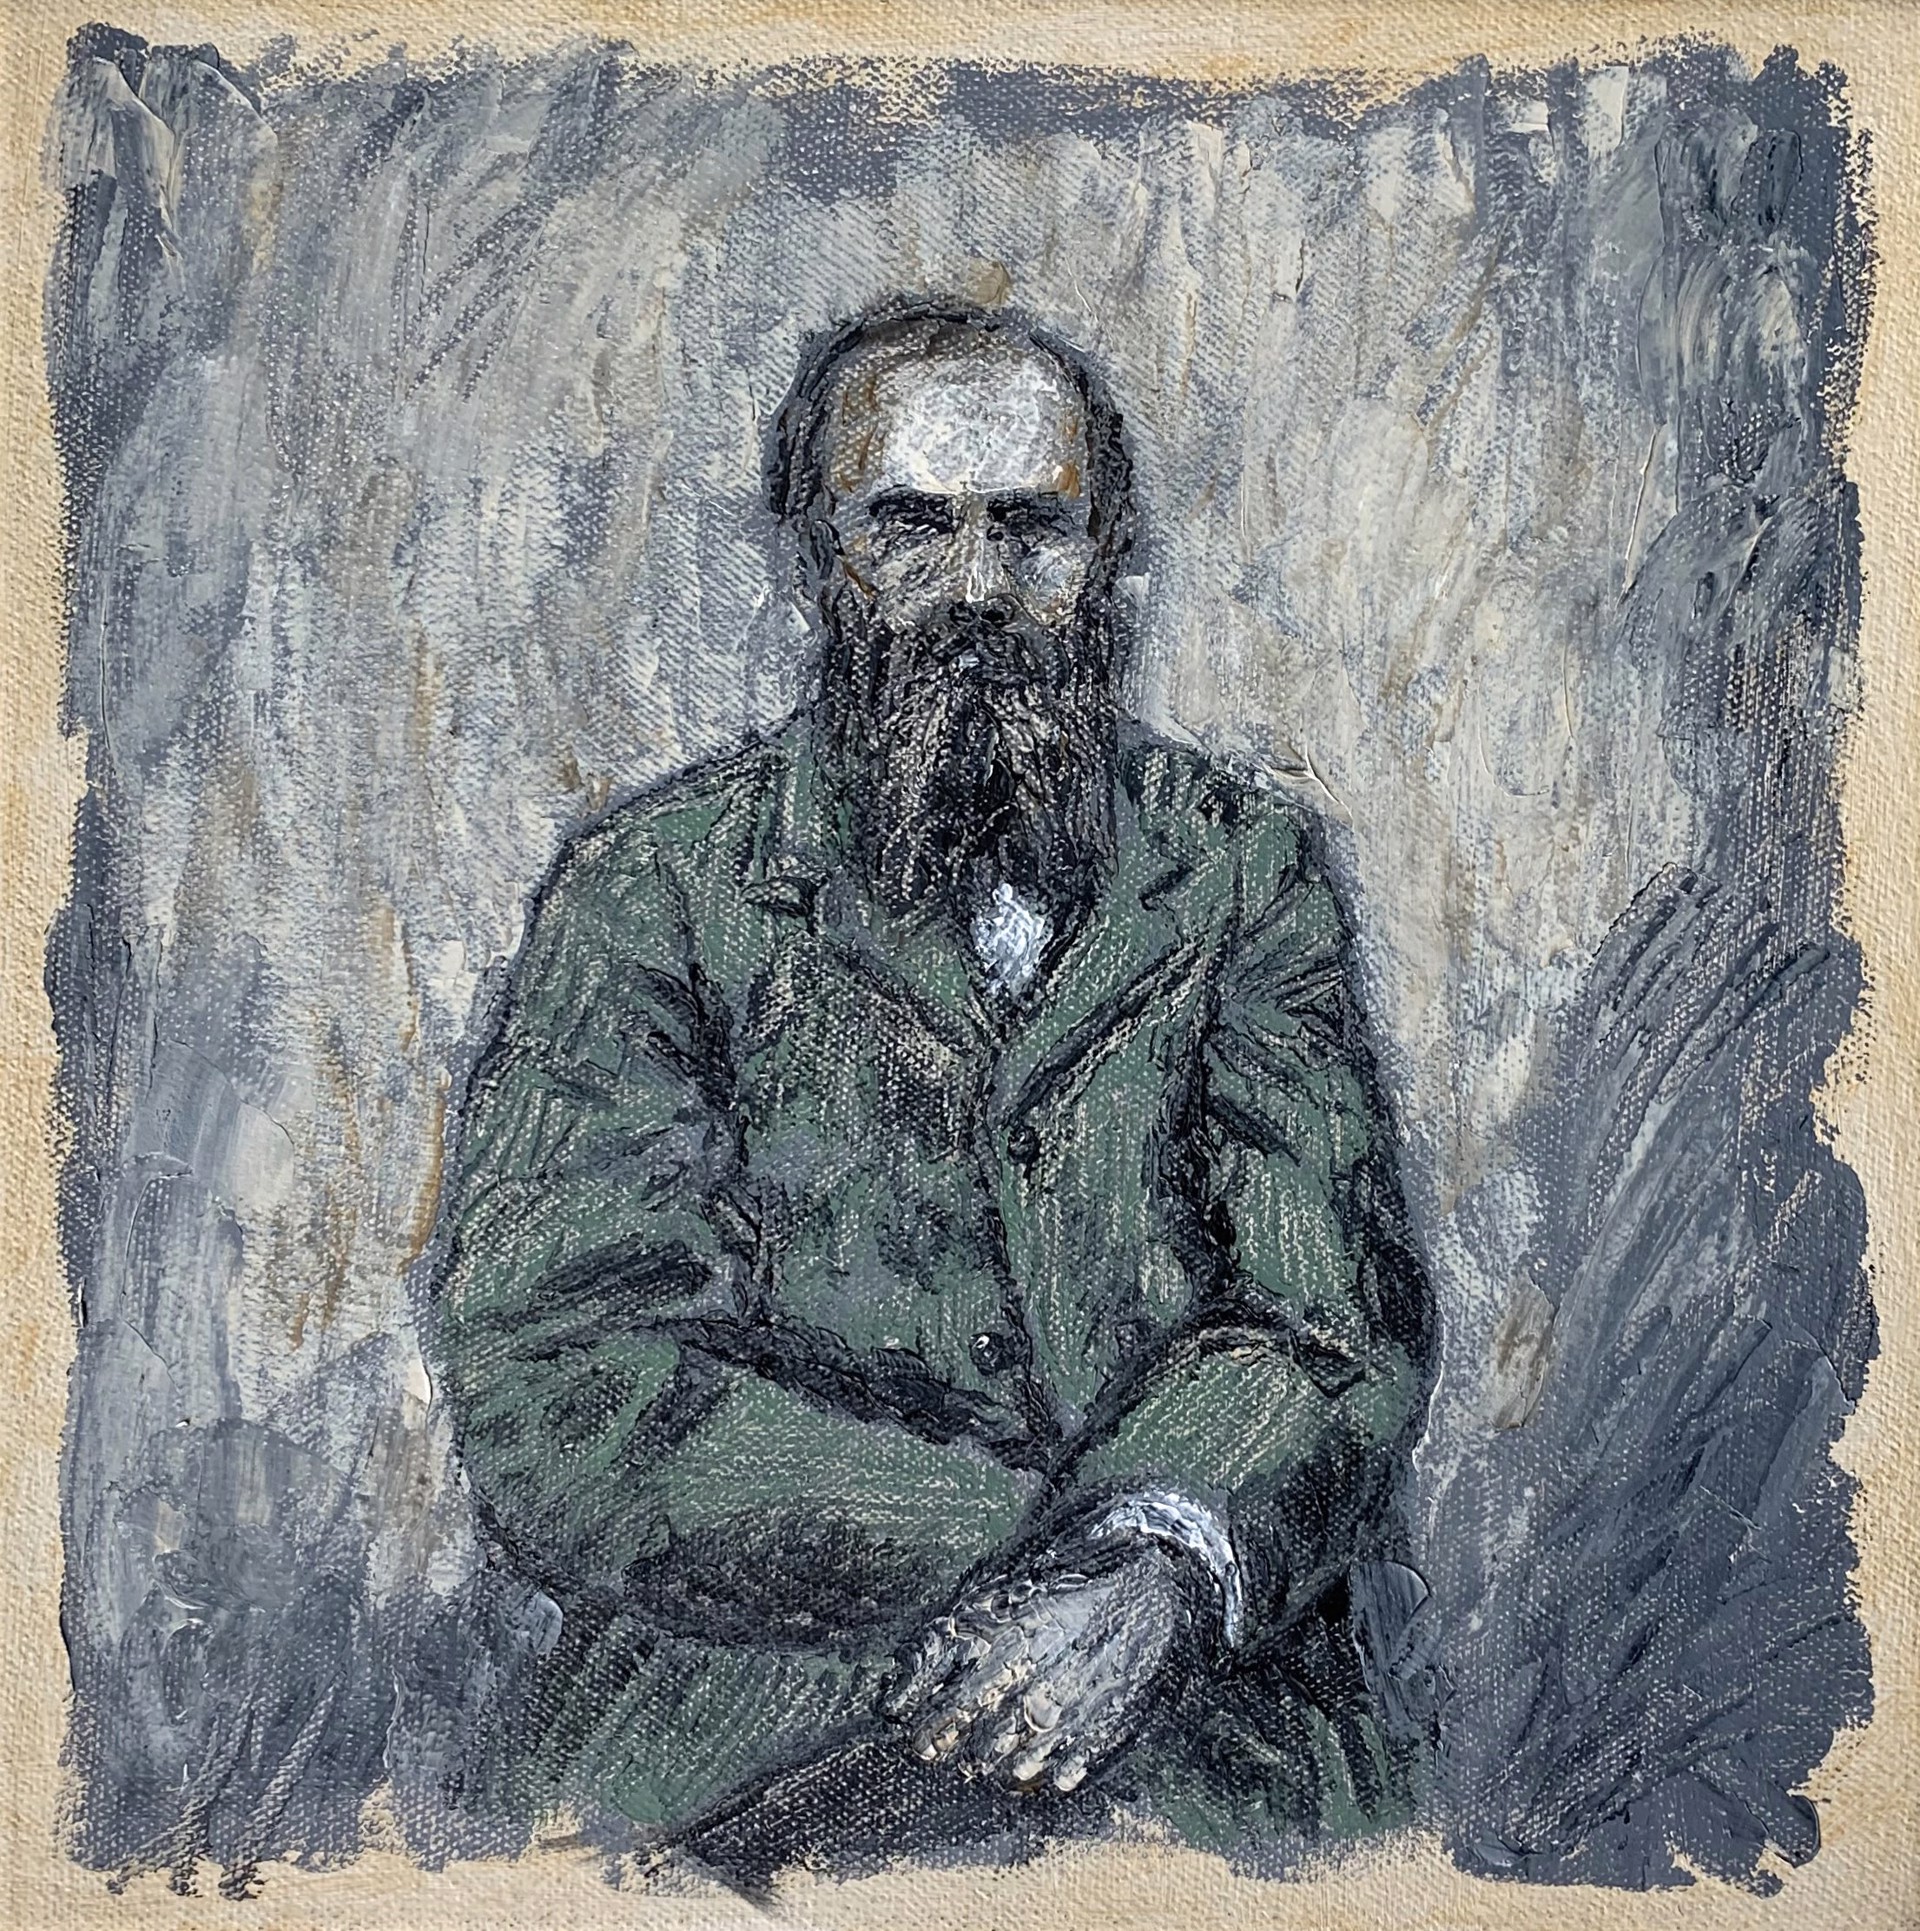 Dostoevsky by Mark Hix